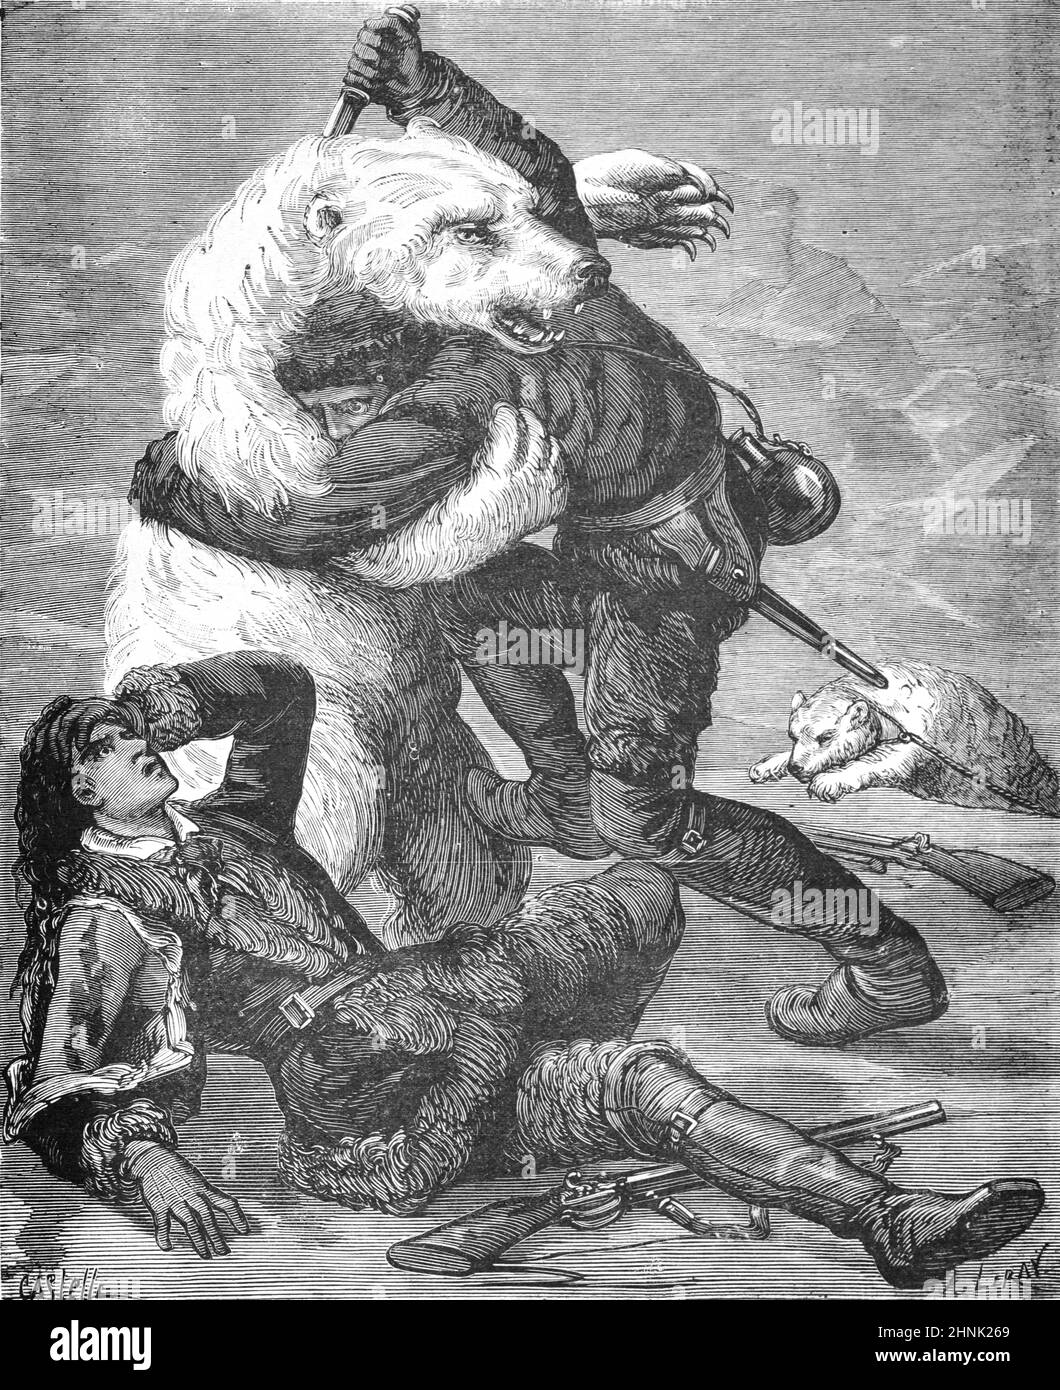 Eisbären, Ursus maritimus, greifen frühe arktische Forscher in der arktischen Region an. Vintage Illustration oder Engraving1878 (Castelli) Stockfoto